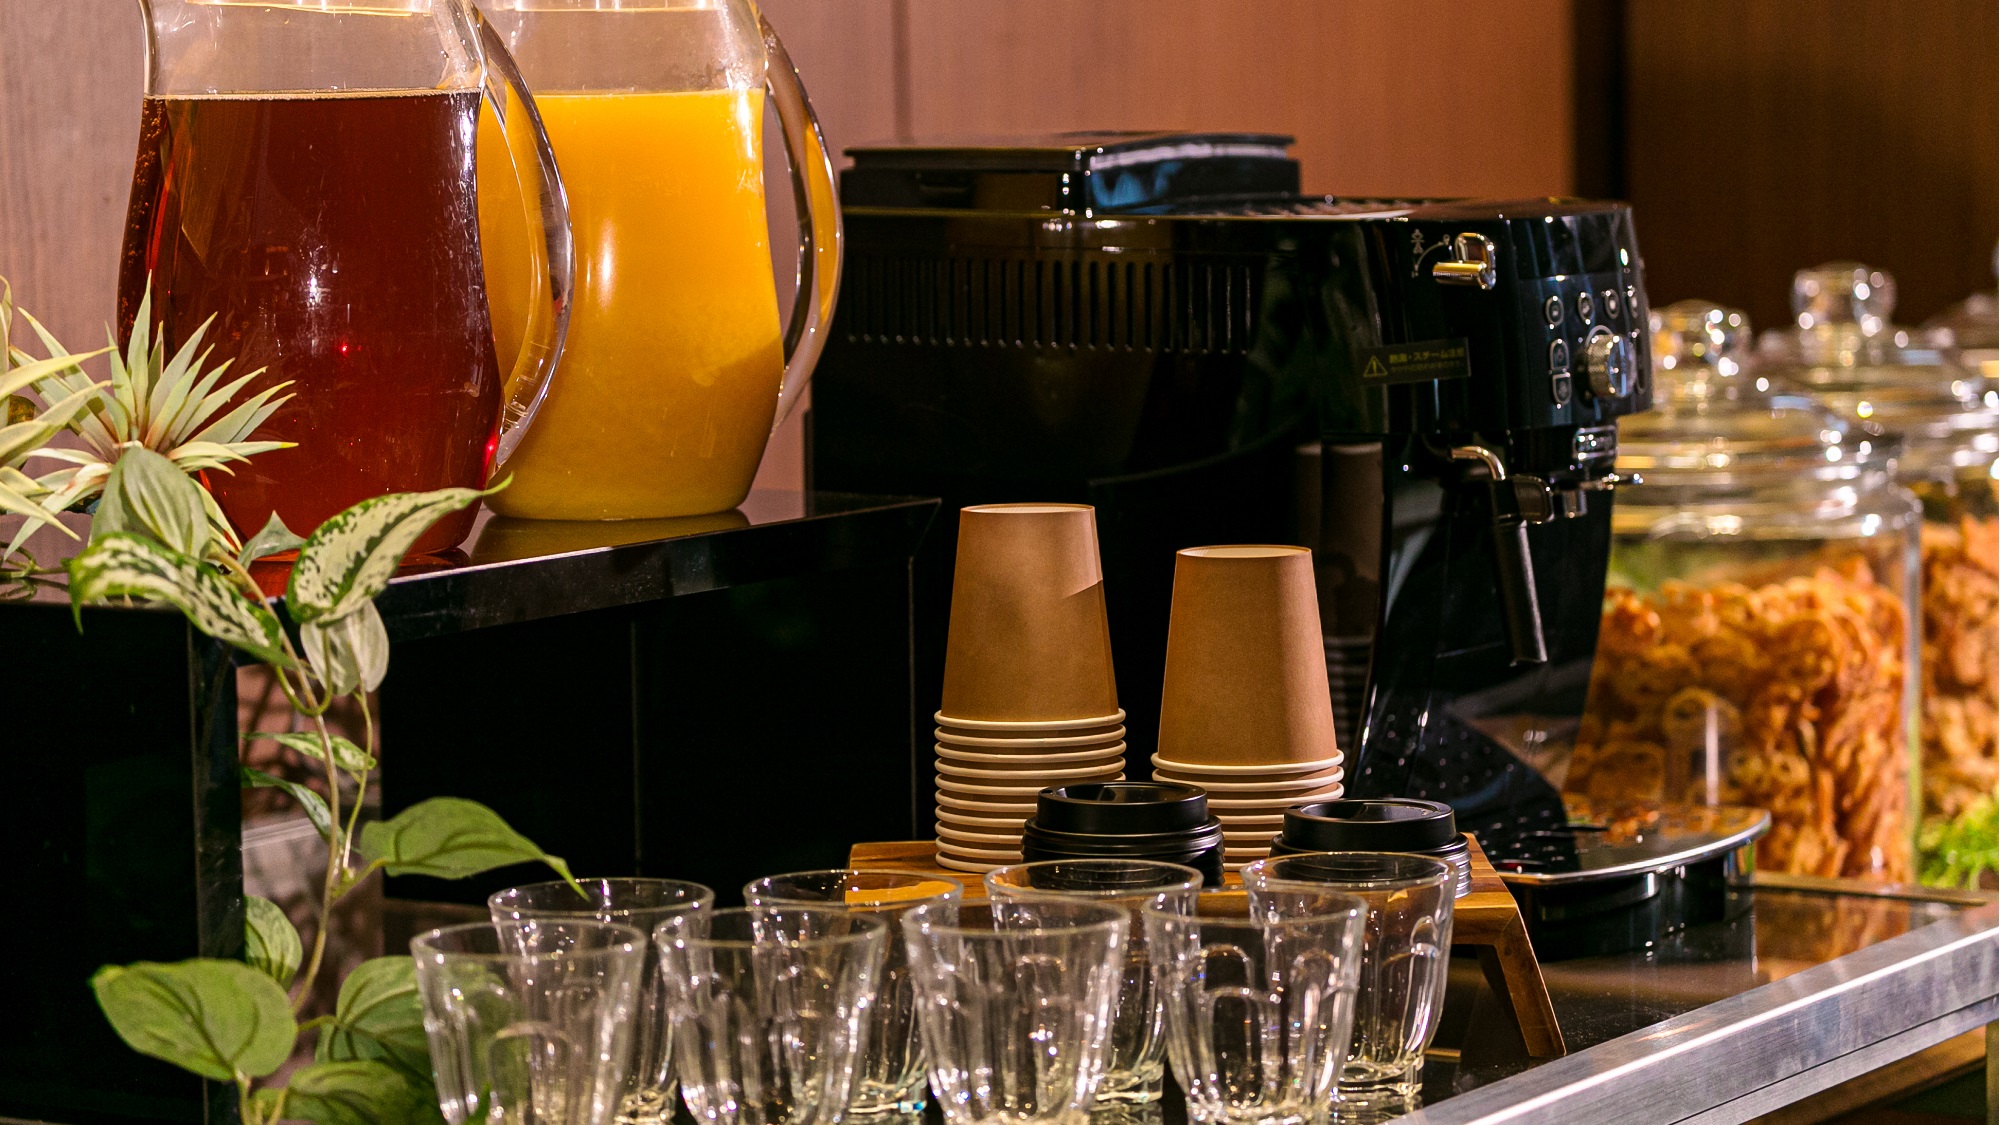 ◇コーヒーマシーンによる挽きたてのコーヒー、オレンジジュース、ウーロン茶